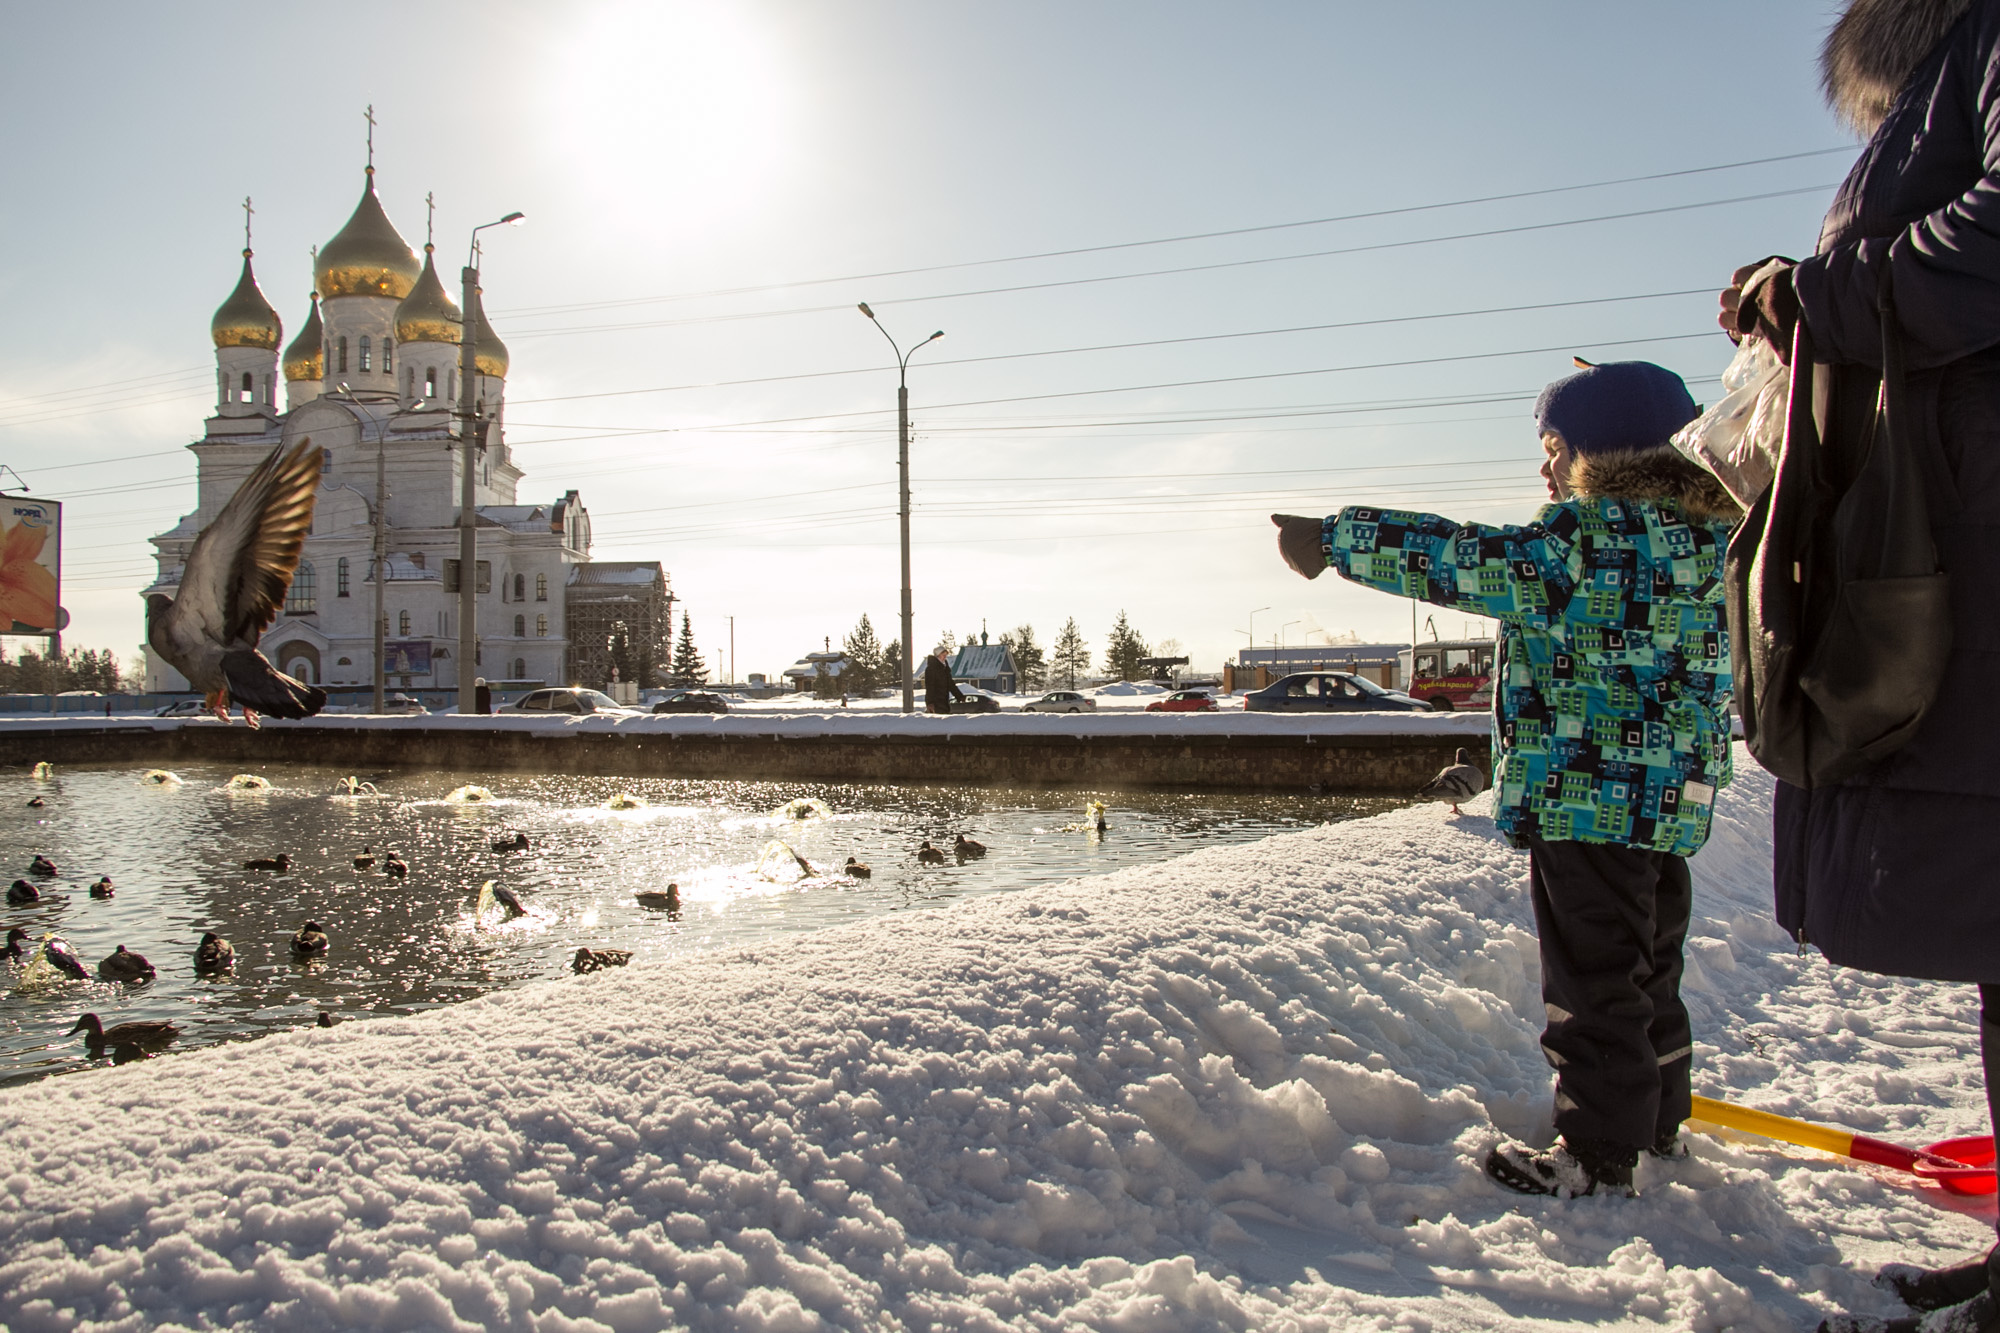 Меньше солнца — больше депрессий. Не пропускайте возможность прогуляться и «зарядиться» энергией в редкий солнечный зимний день в Архангельске